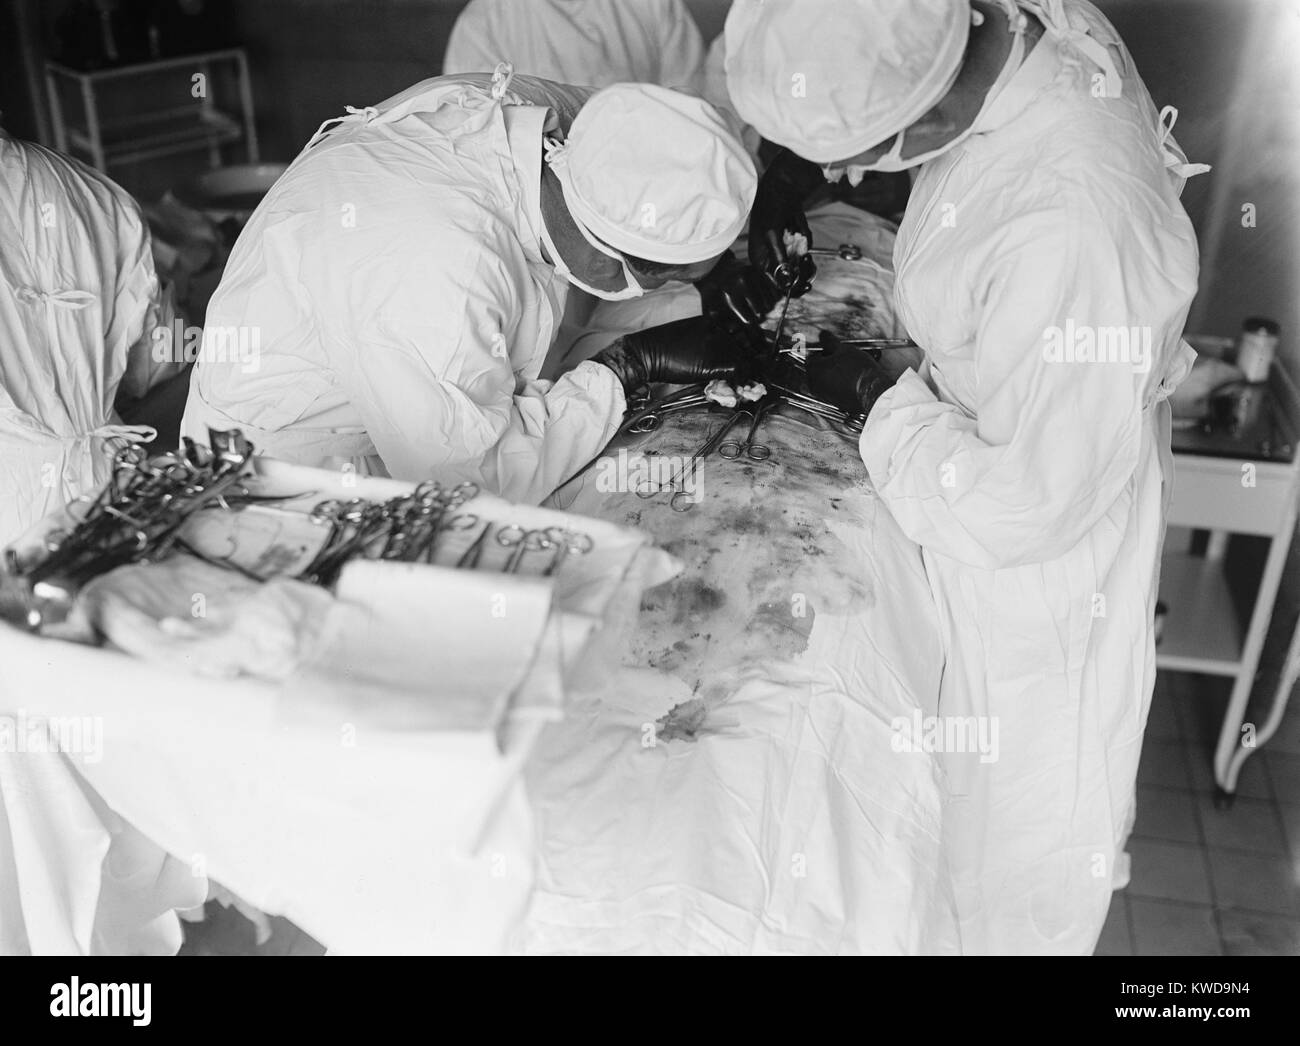 Frequentando il chirurgo si inclina oltre a lavorare a stretto contatto su un addome del paziente. Il campo chirurgico è macchiato di sangue. 1922 in un ospedale di Washington, D.C. (BSLOC 2016 10 36) Foto Stock